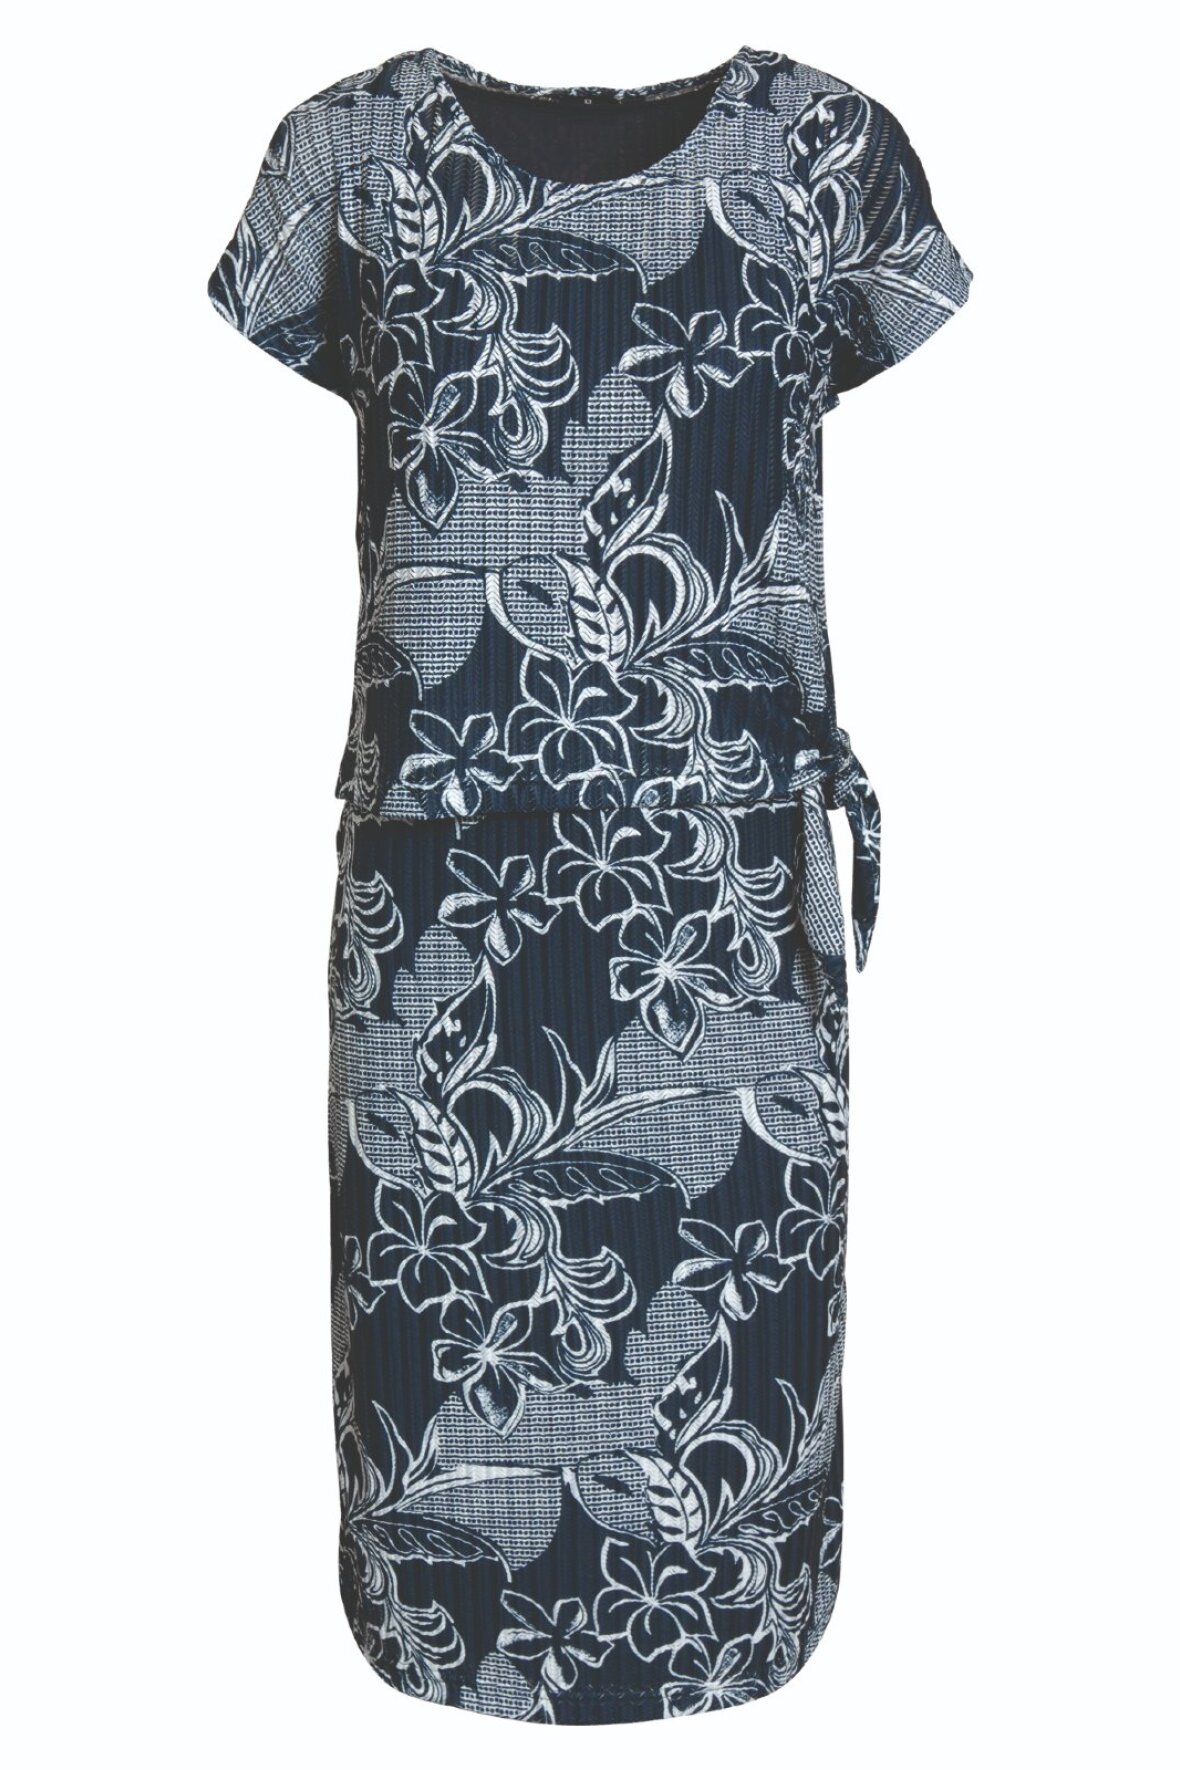 Brandtex Classic kjole med fast underkjole og bluse i marineblå - Lohse